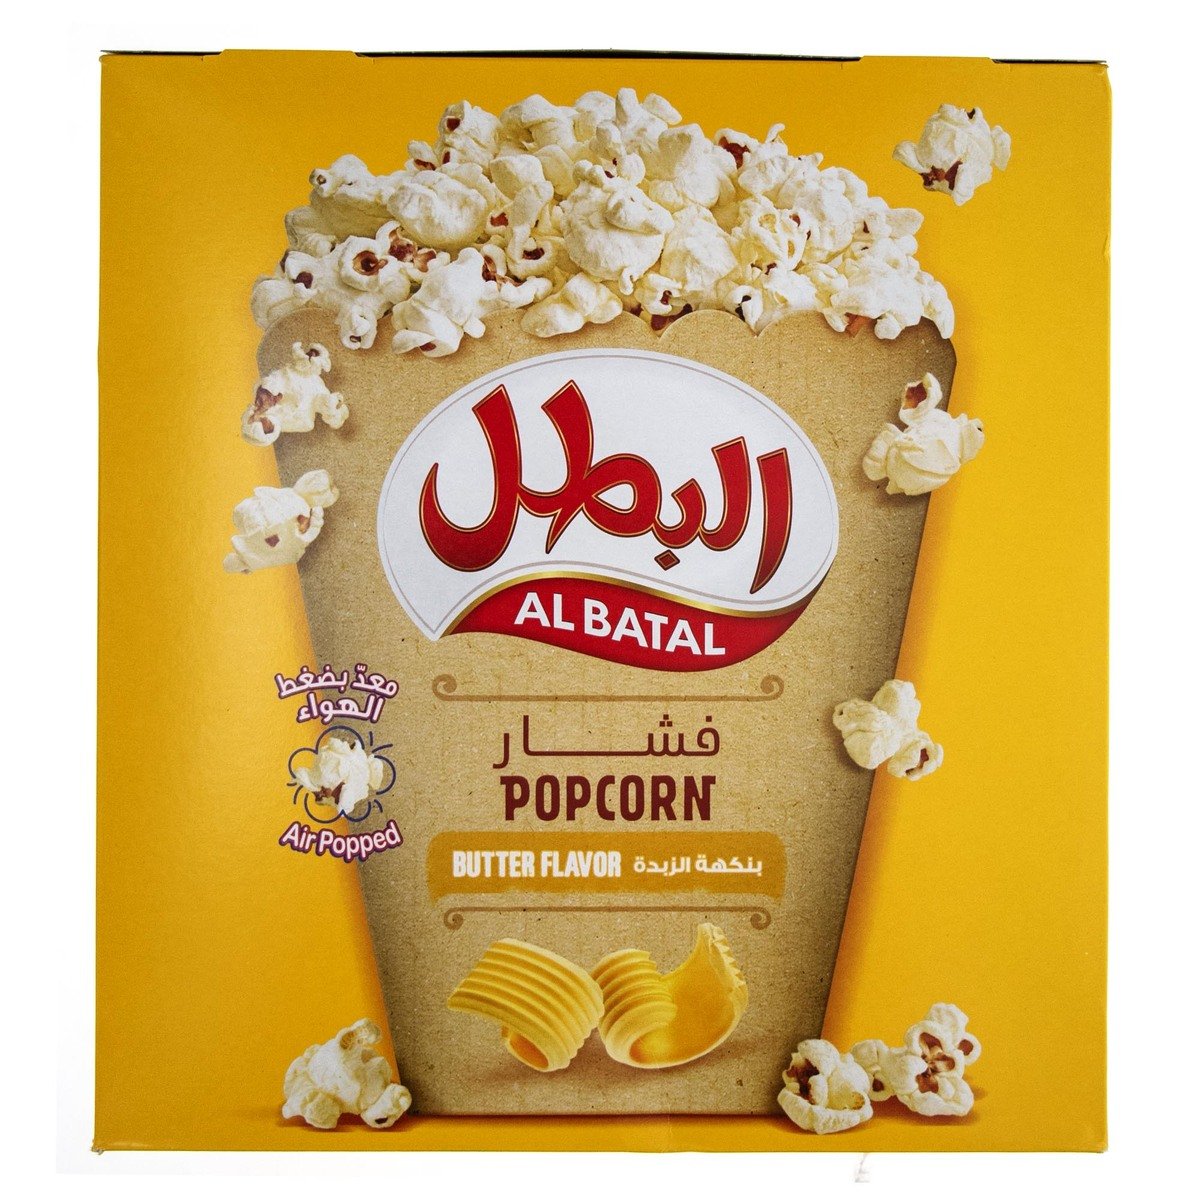 اشتري قم بشراء البطل فشار بنكهة الزبدة 23 جم Online at Best Price من الموقع - من لولو هايبر ماركت Pop Corn في السعودية